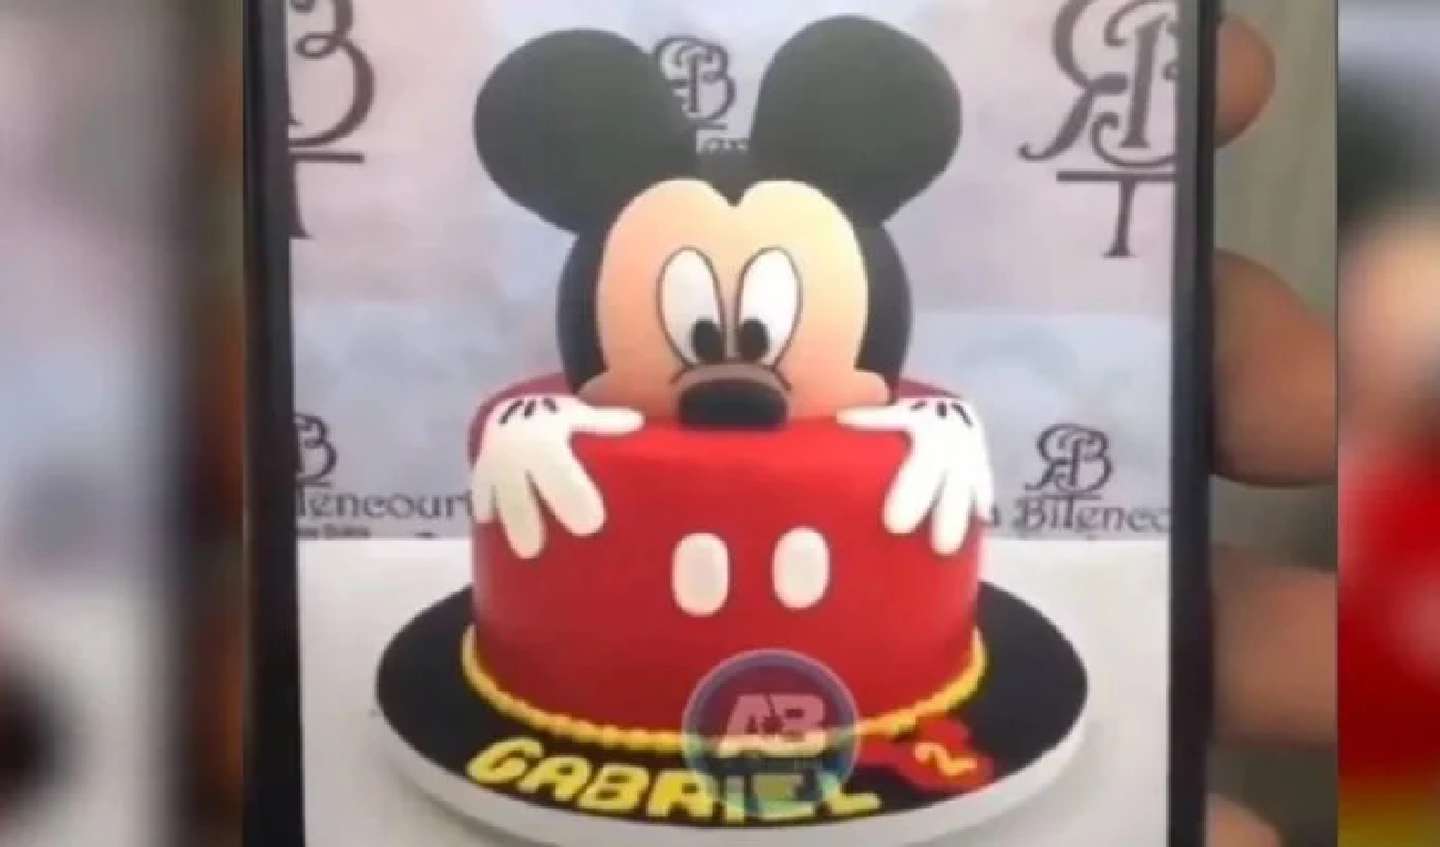  torta de Mickey Mouse que se hizo viral